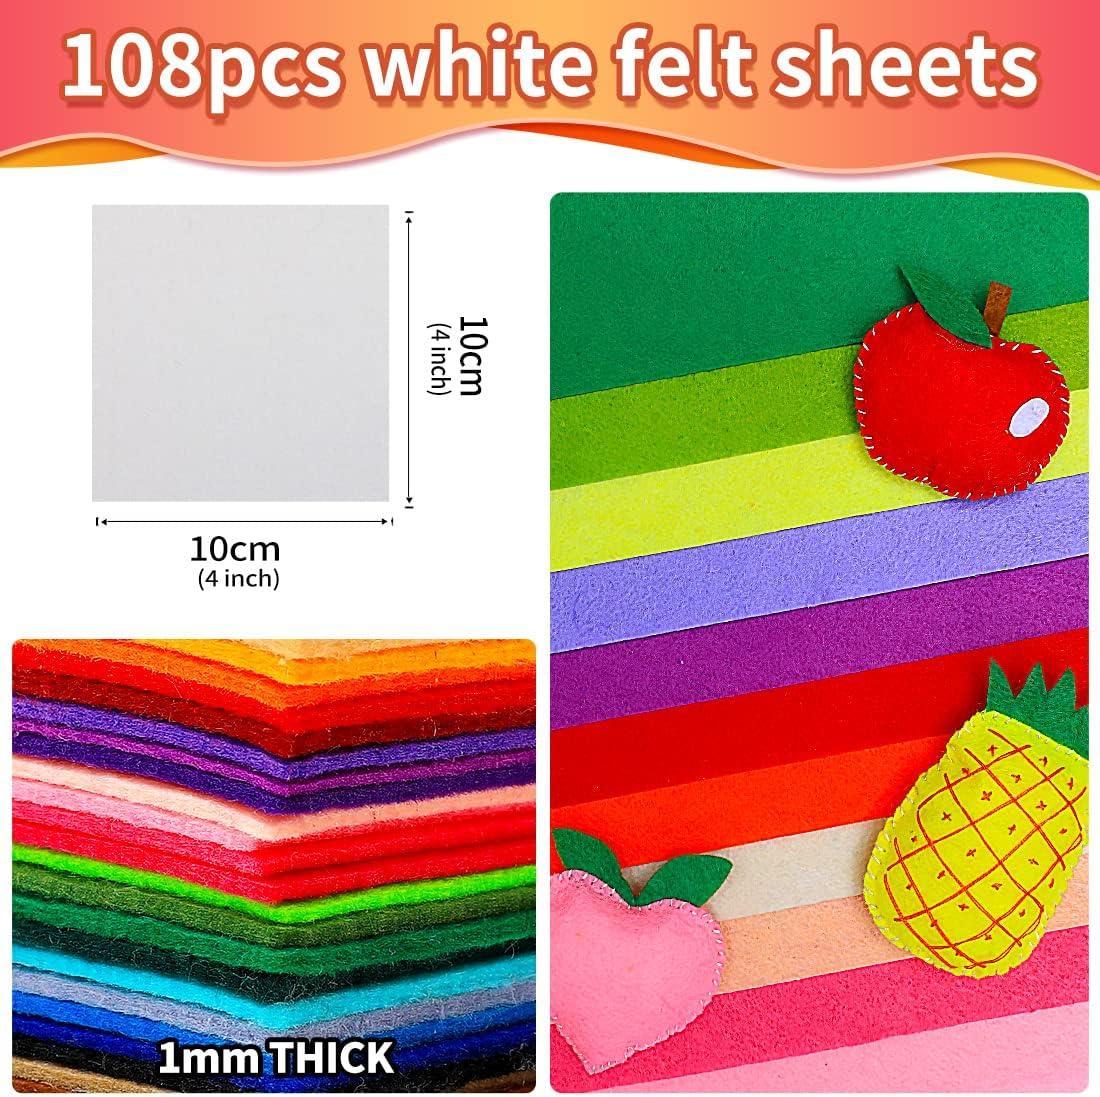 IOOLEEM White Felt Sheets 108pcs 4'x4' (10 cm x 10 cm) Pre-Cut Felt Sheet  for Crafts Craft Felt Fabric Sheets Sewing Felt Squares for Patchwork.  Plain 4x4 inches (10x10cm) White